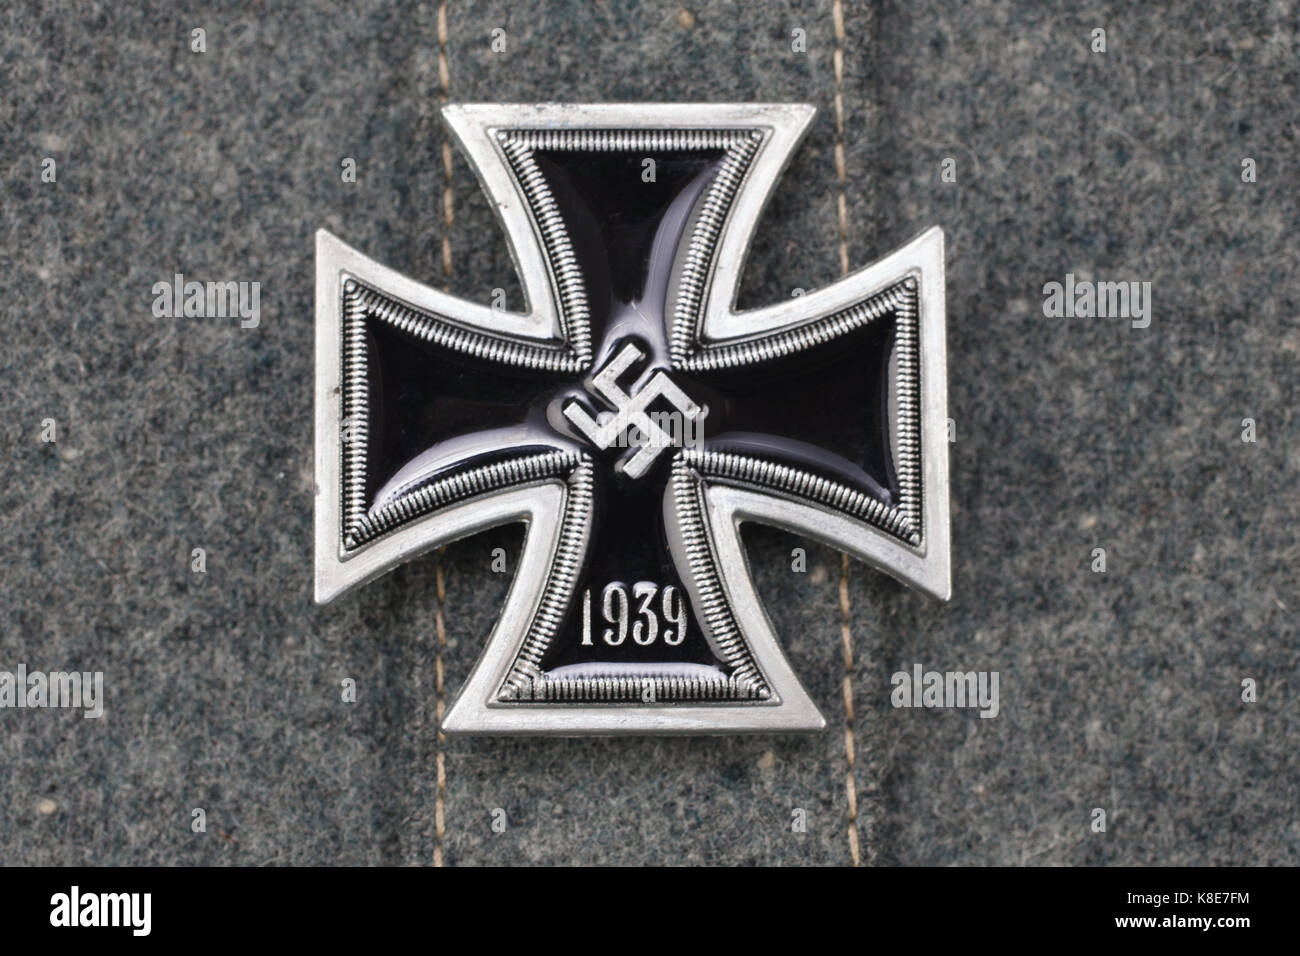 Prix Croix de fer allemande nazie on uniform Banque D'Images